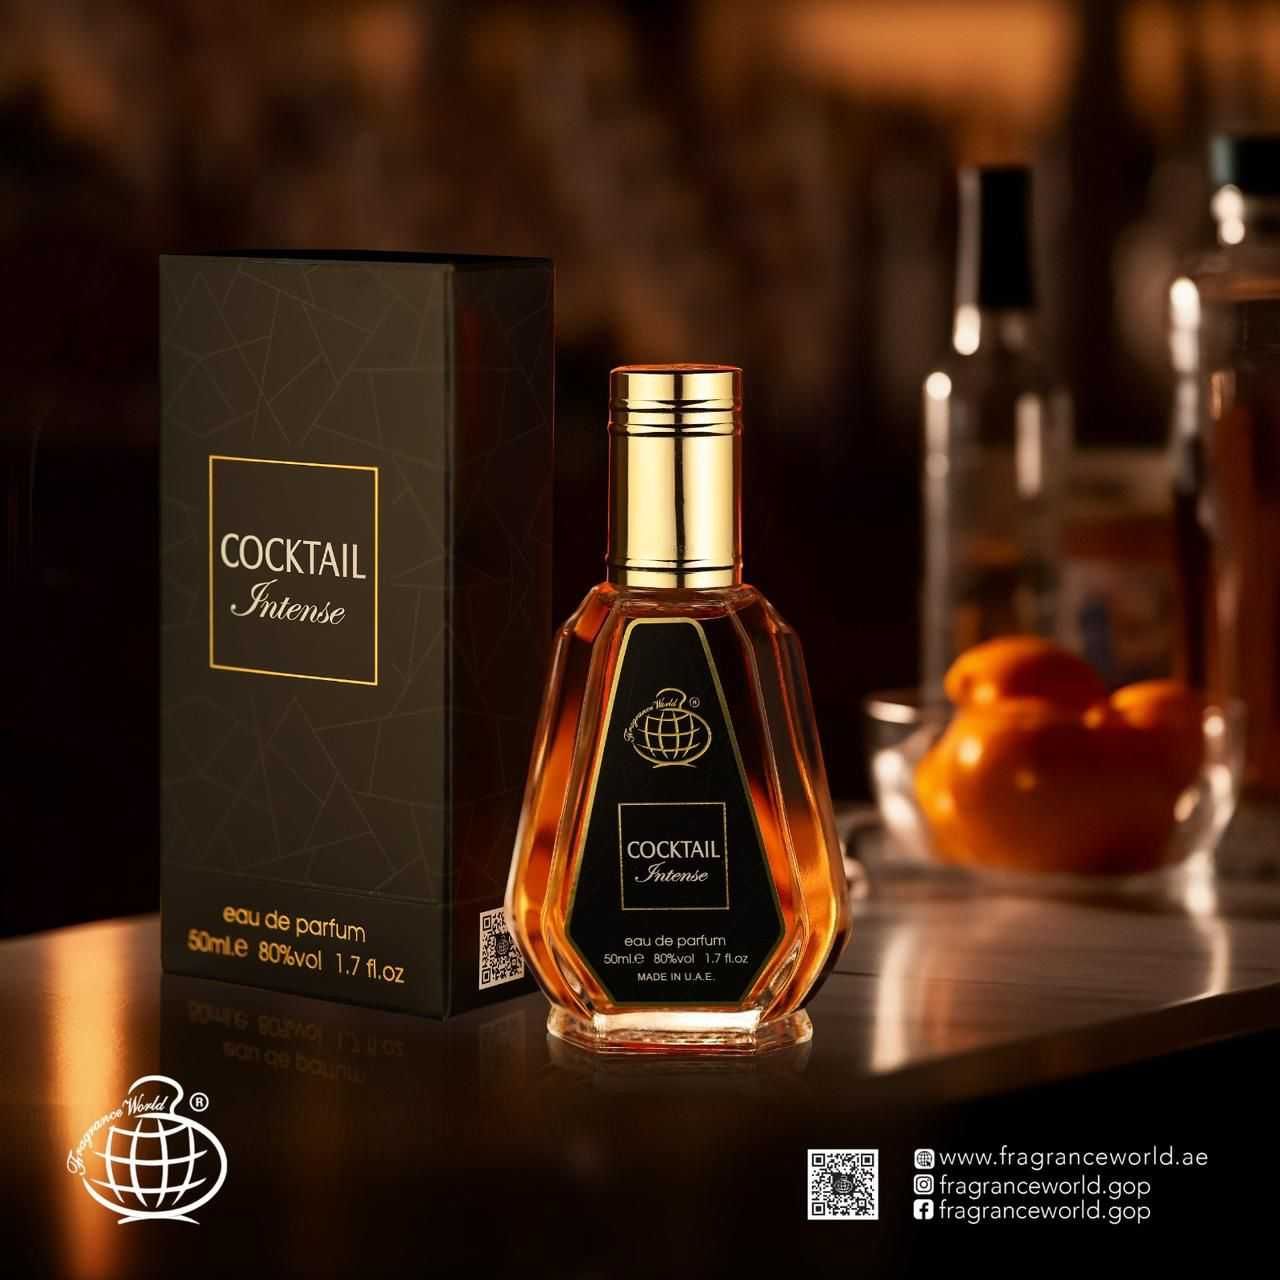 Fragrance World Cocktail Intense 50ml EDP insp Kilian Angels' Share